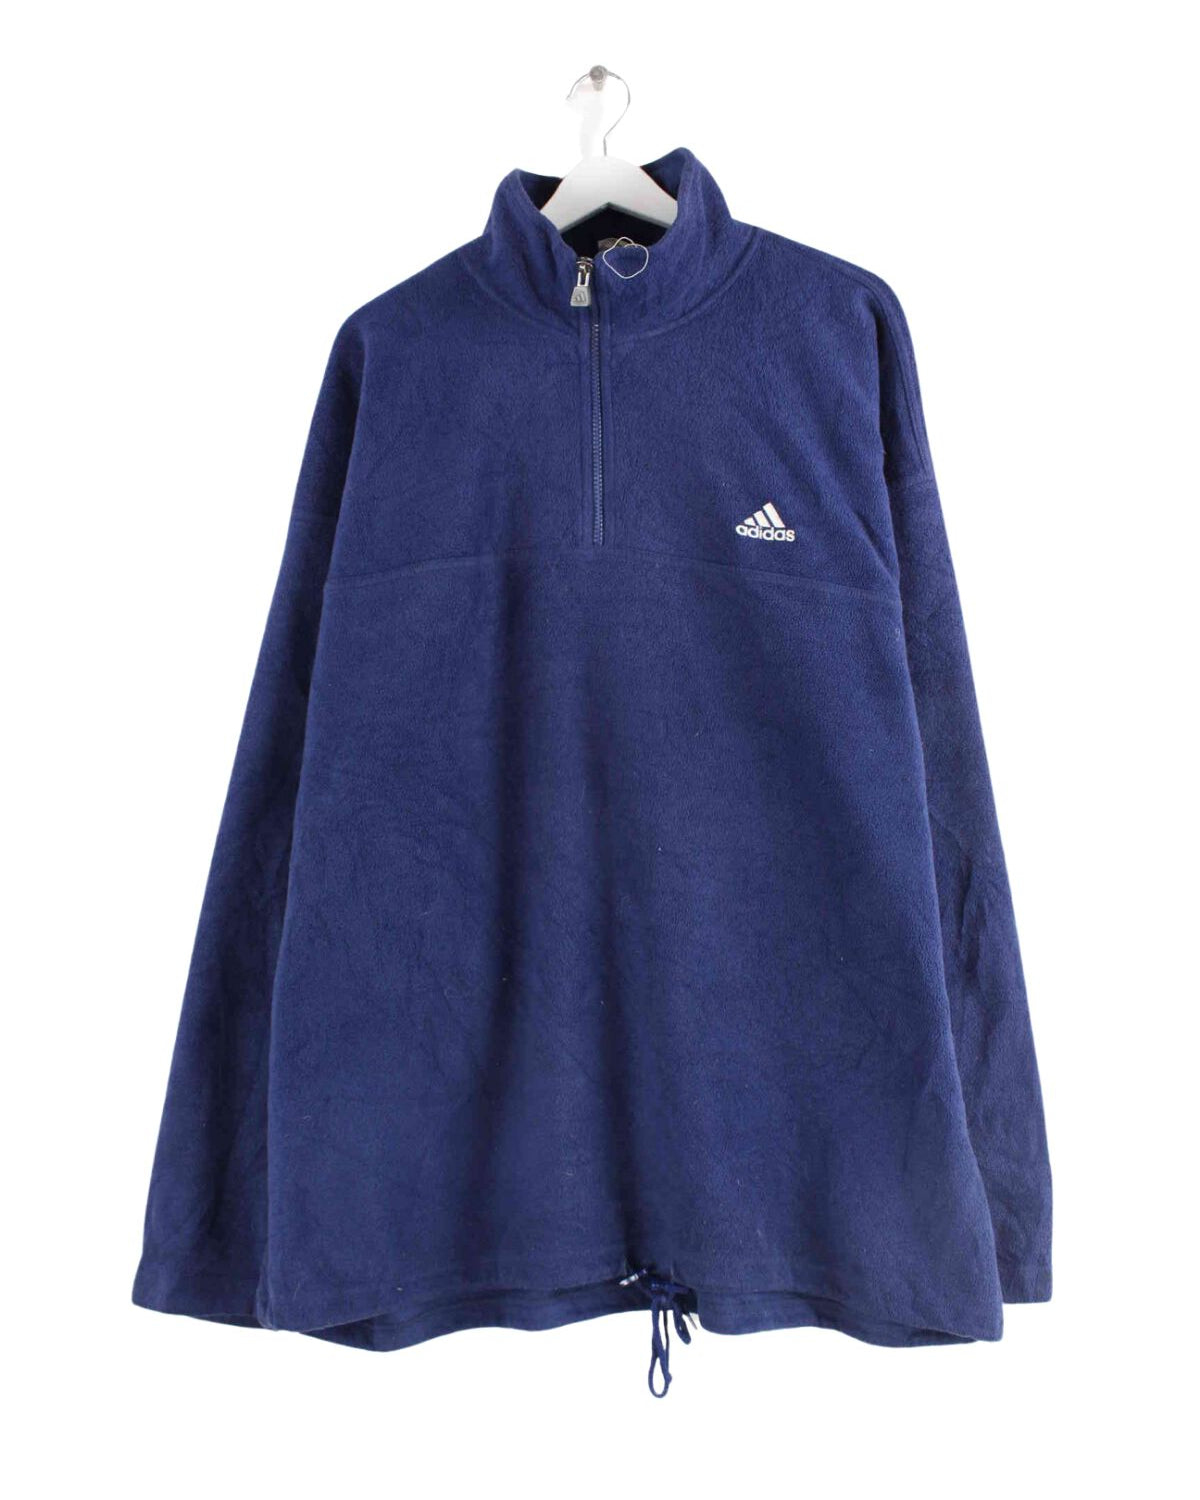 Adidas 90s Vintage Fleece Half Zip Sweater Blau 3XL (front image)